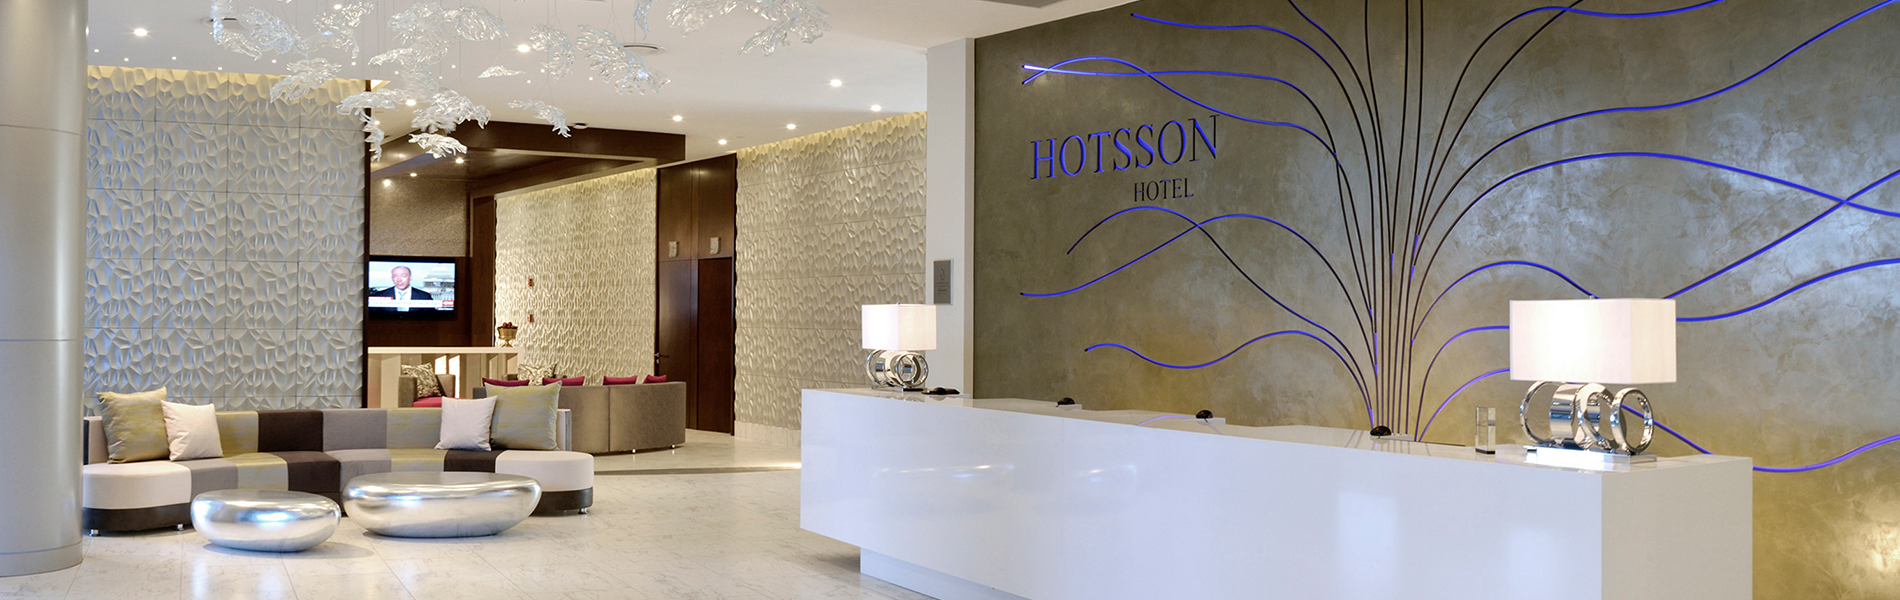 HS HOTSSON Hotel Silao lobby